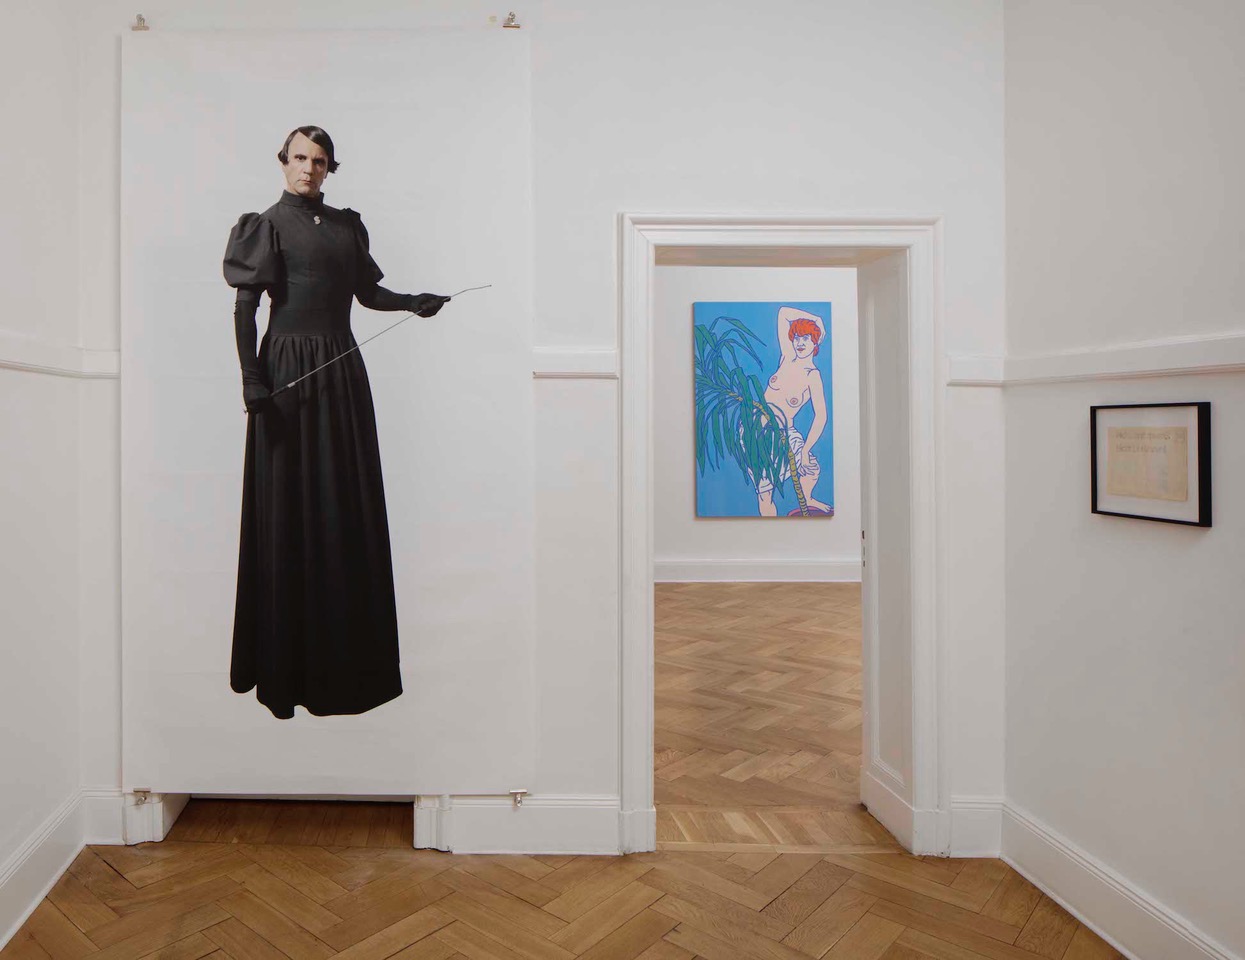 Eingangssituation in einer Berliner Altbauwohnung. Zu sehen ist der Künstler Björn Melhus als Ayn Rand. Im Hintergrund ein Bild von Otto Muehl mit einer Nacktdarstellung einer Frau. 